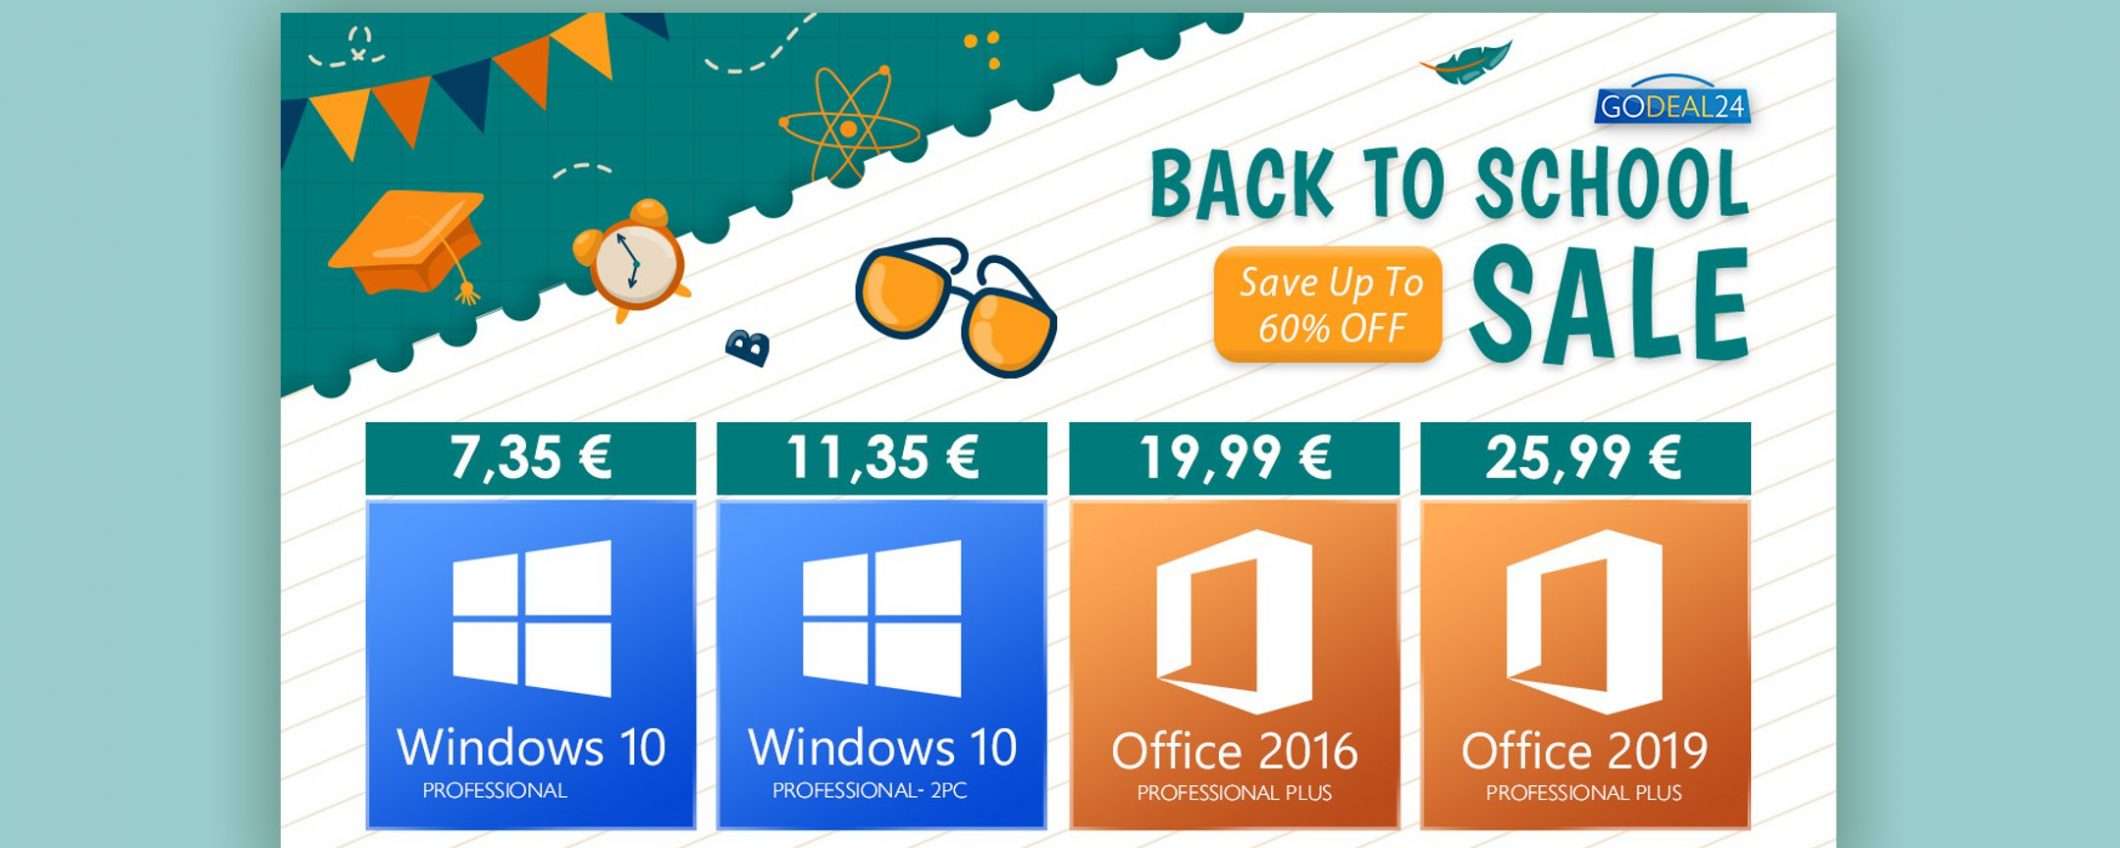 Saldi Godeal24: attiva Windows 10 per soli 6€ a PC